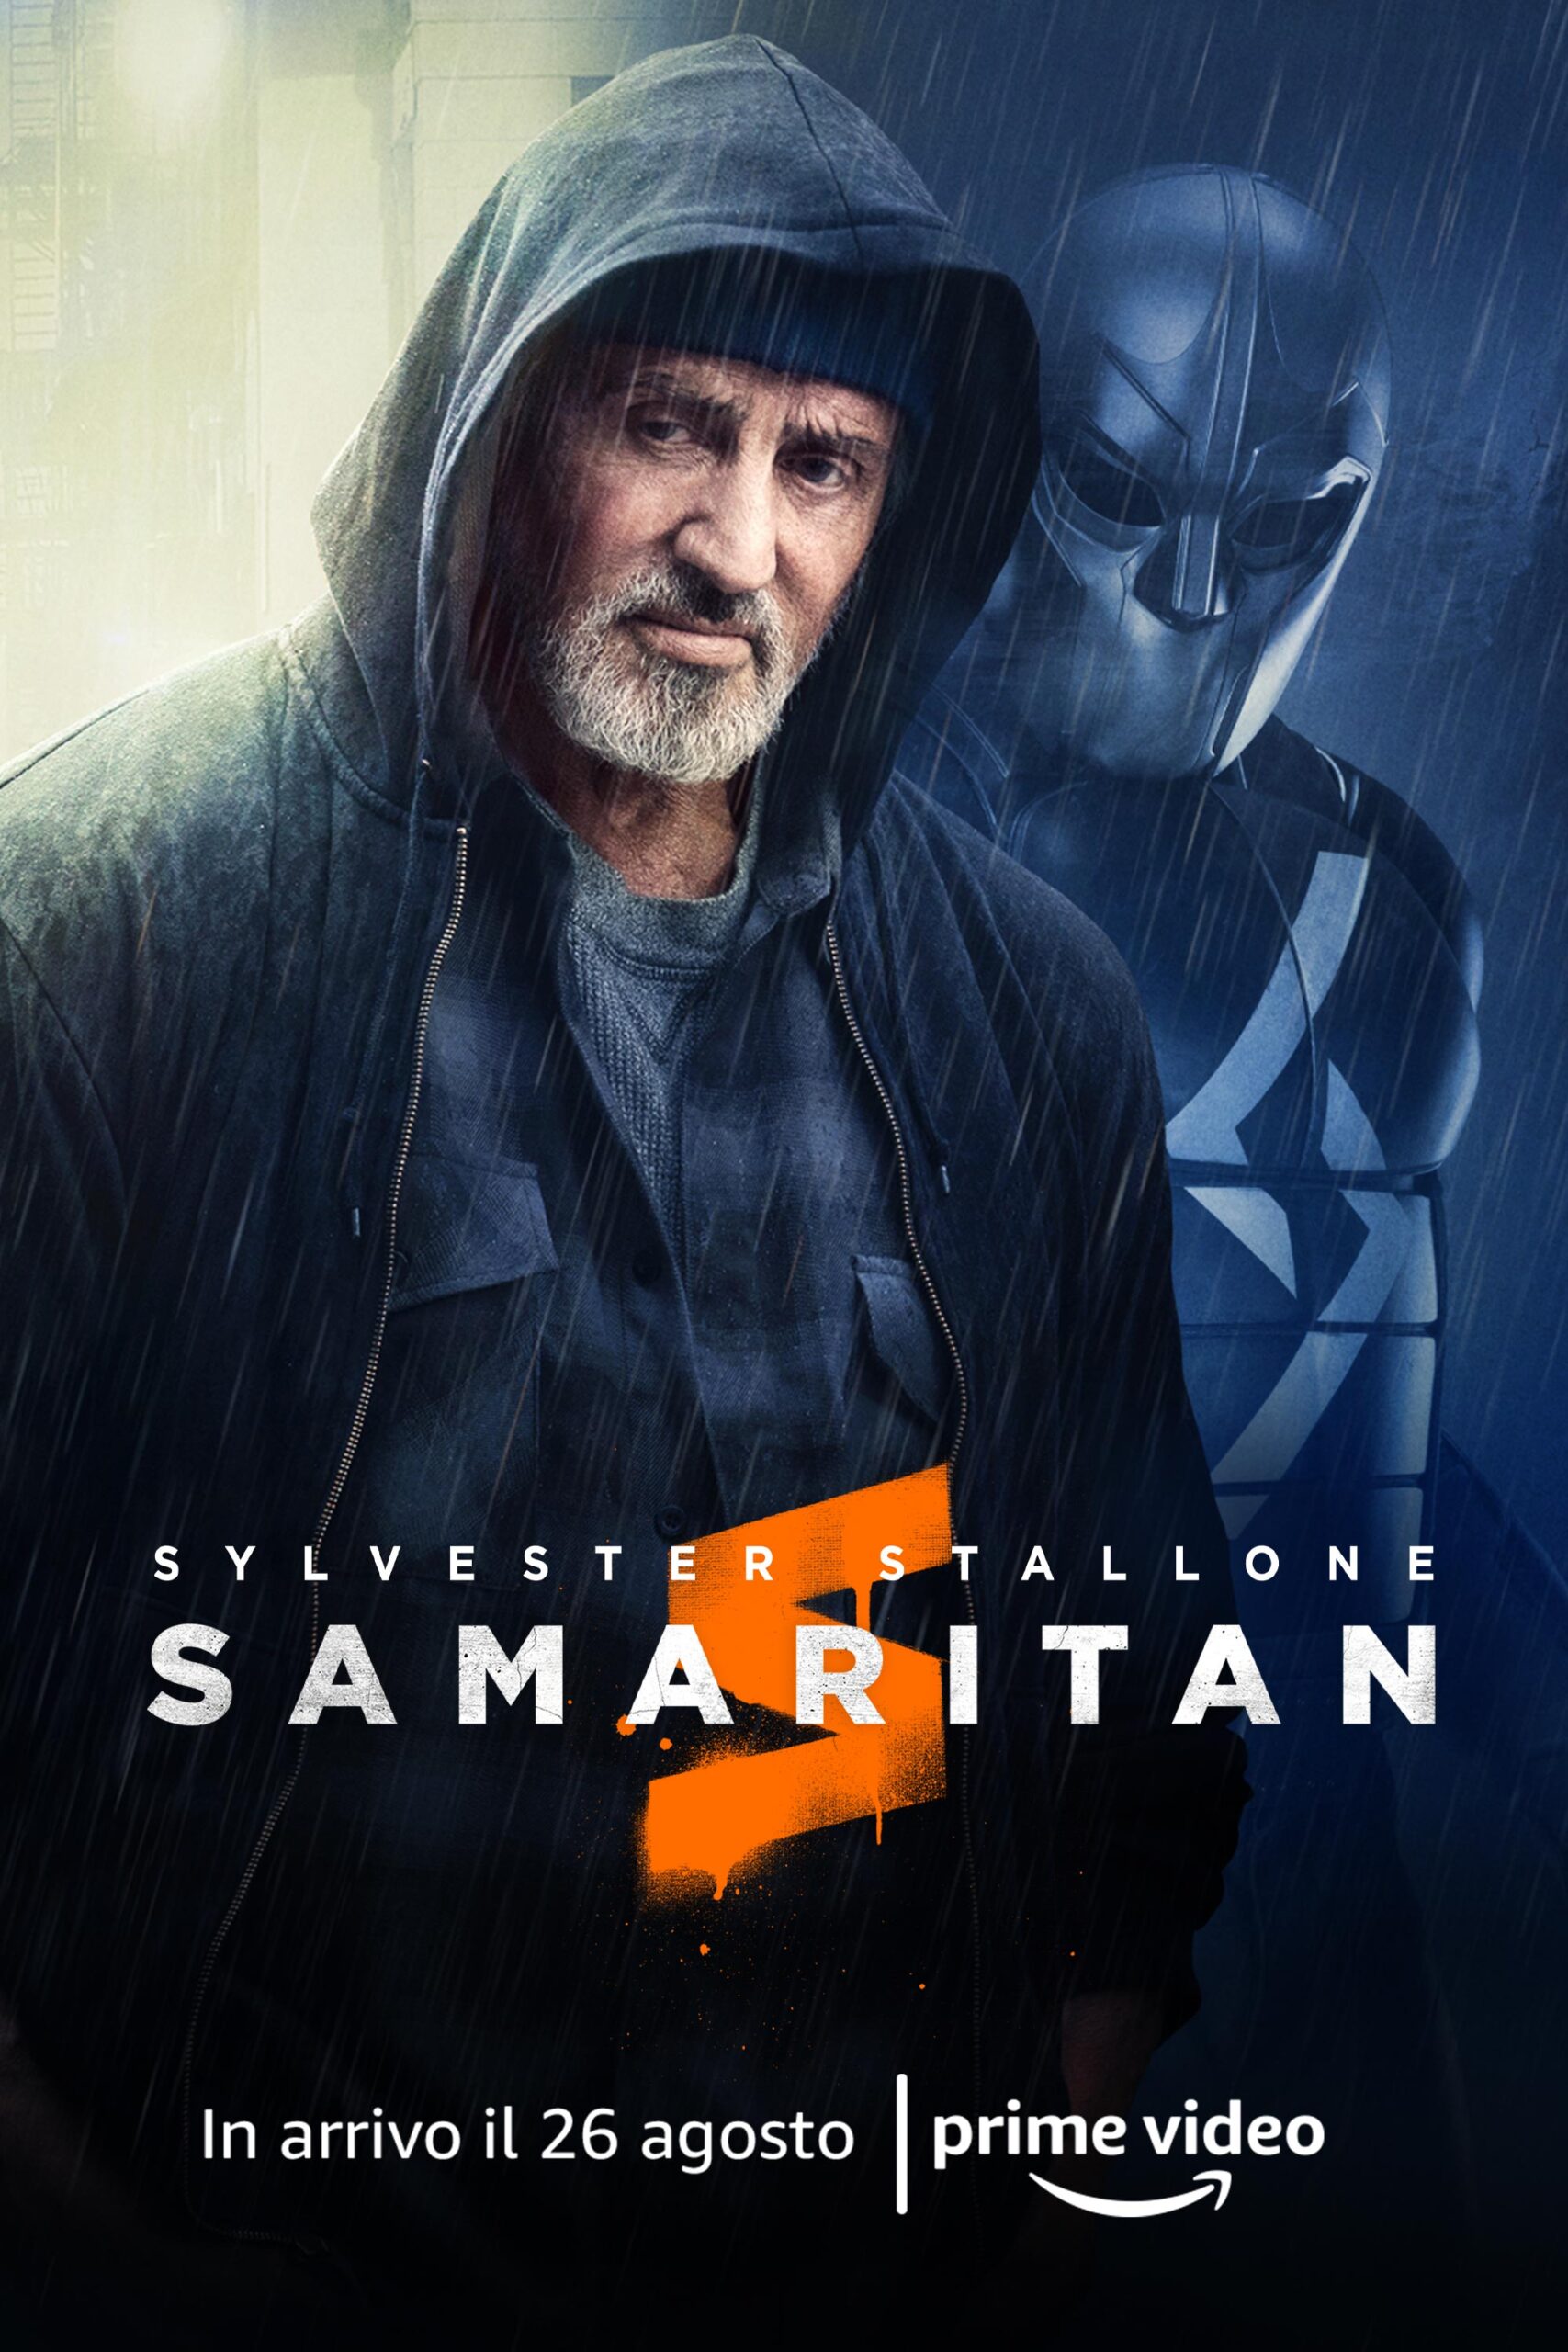 Samaritan, il buco di sceneggiatura con dentro un film